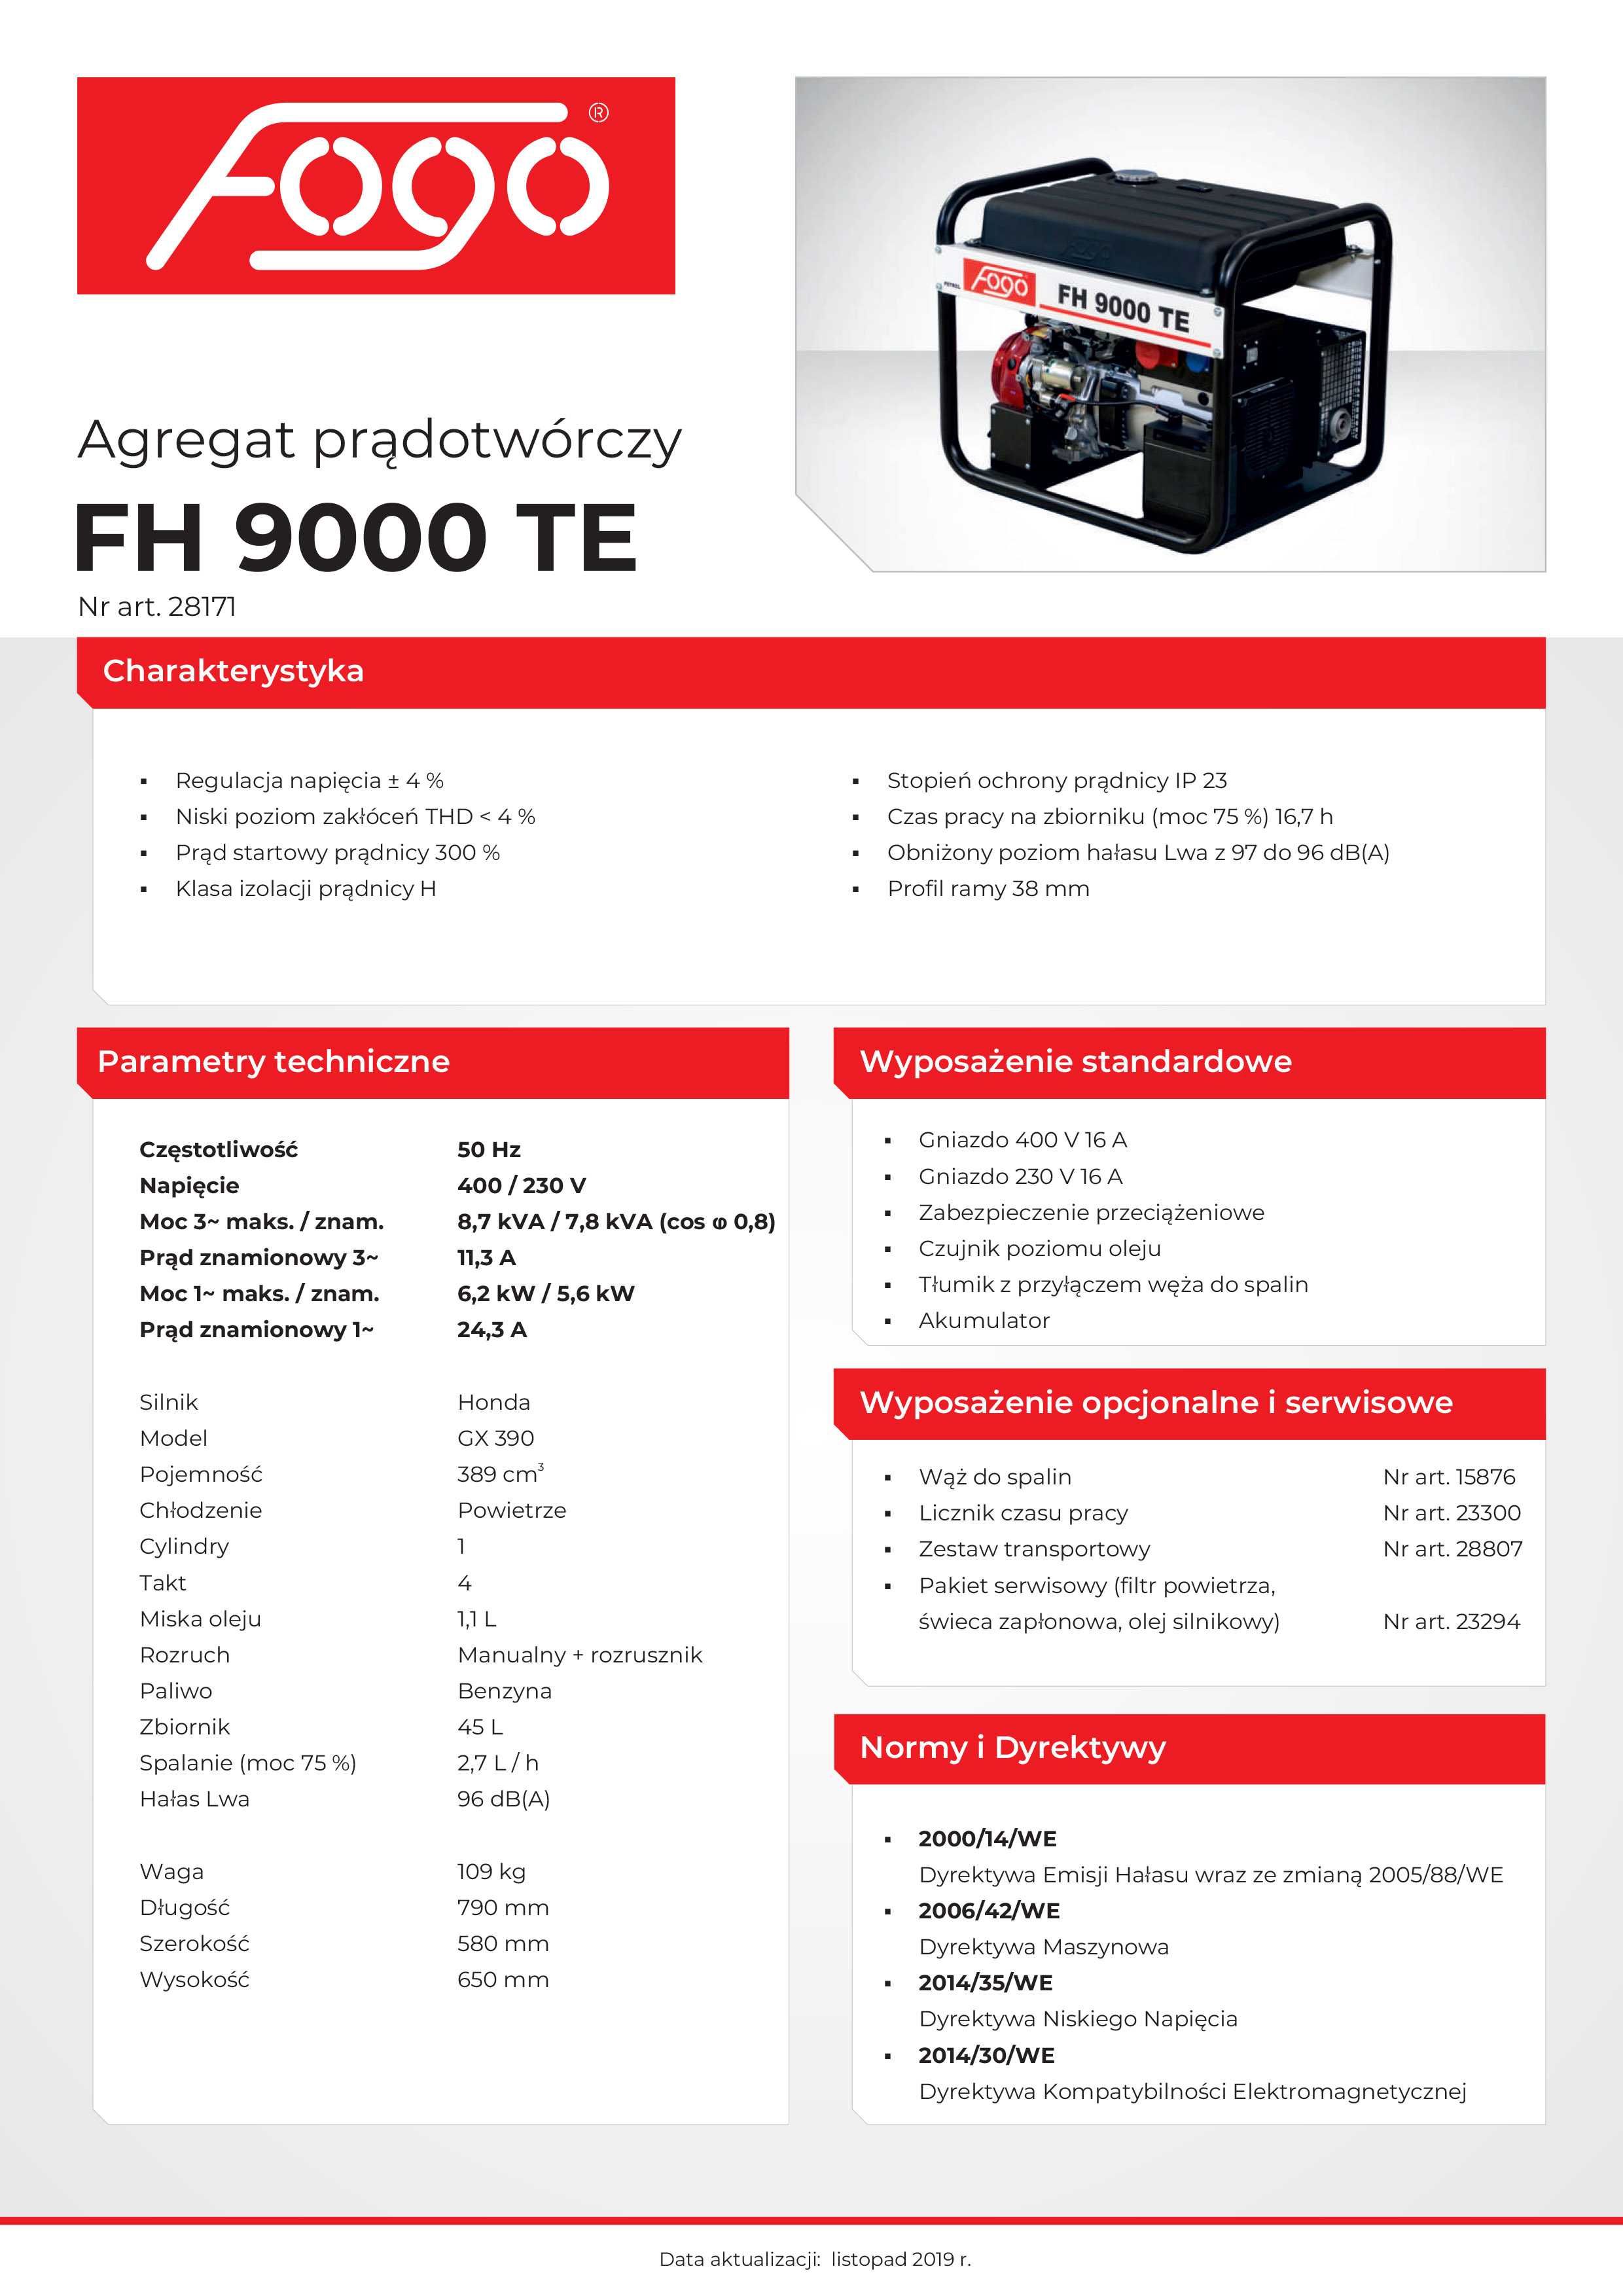 Agregat prądotwórczy fogo FH 9000 TE